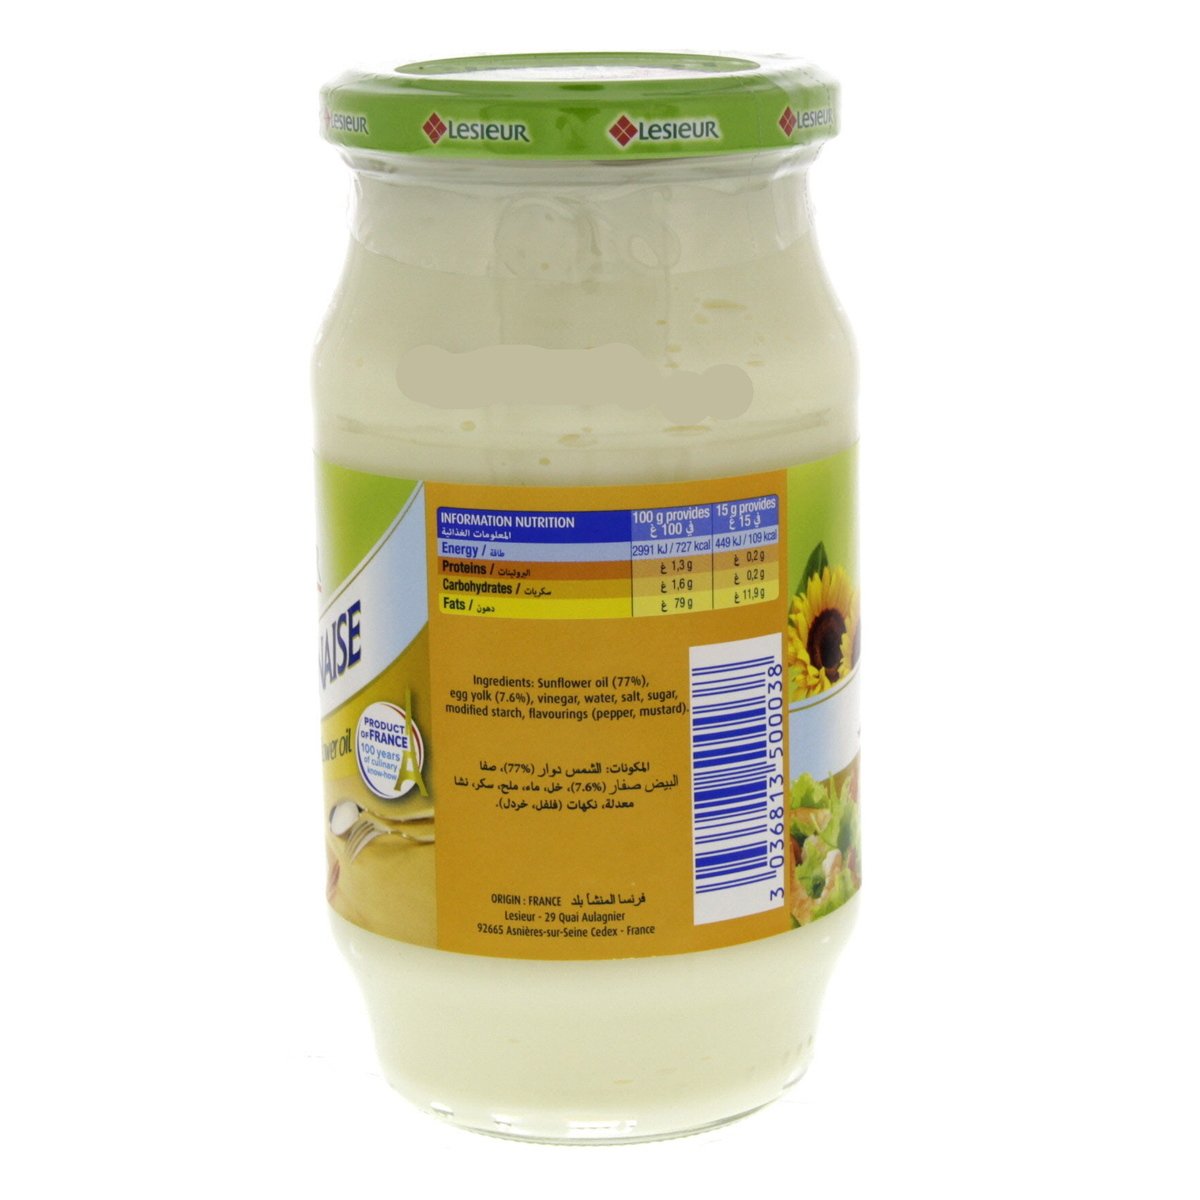 Lesieur La Mayonnaise With Sunflower Oil 475 ml